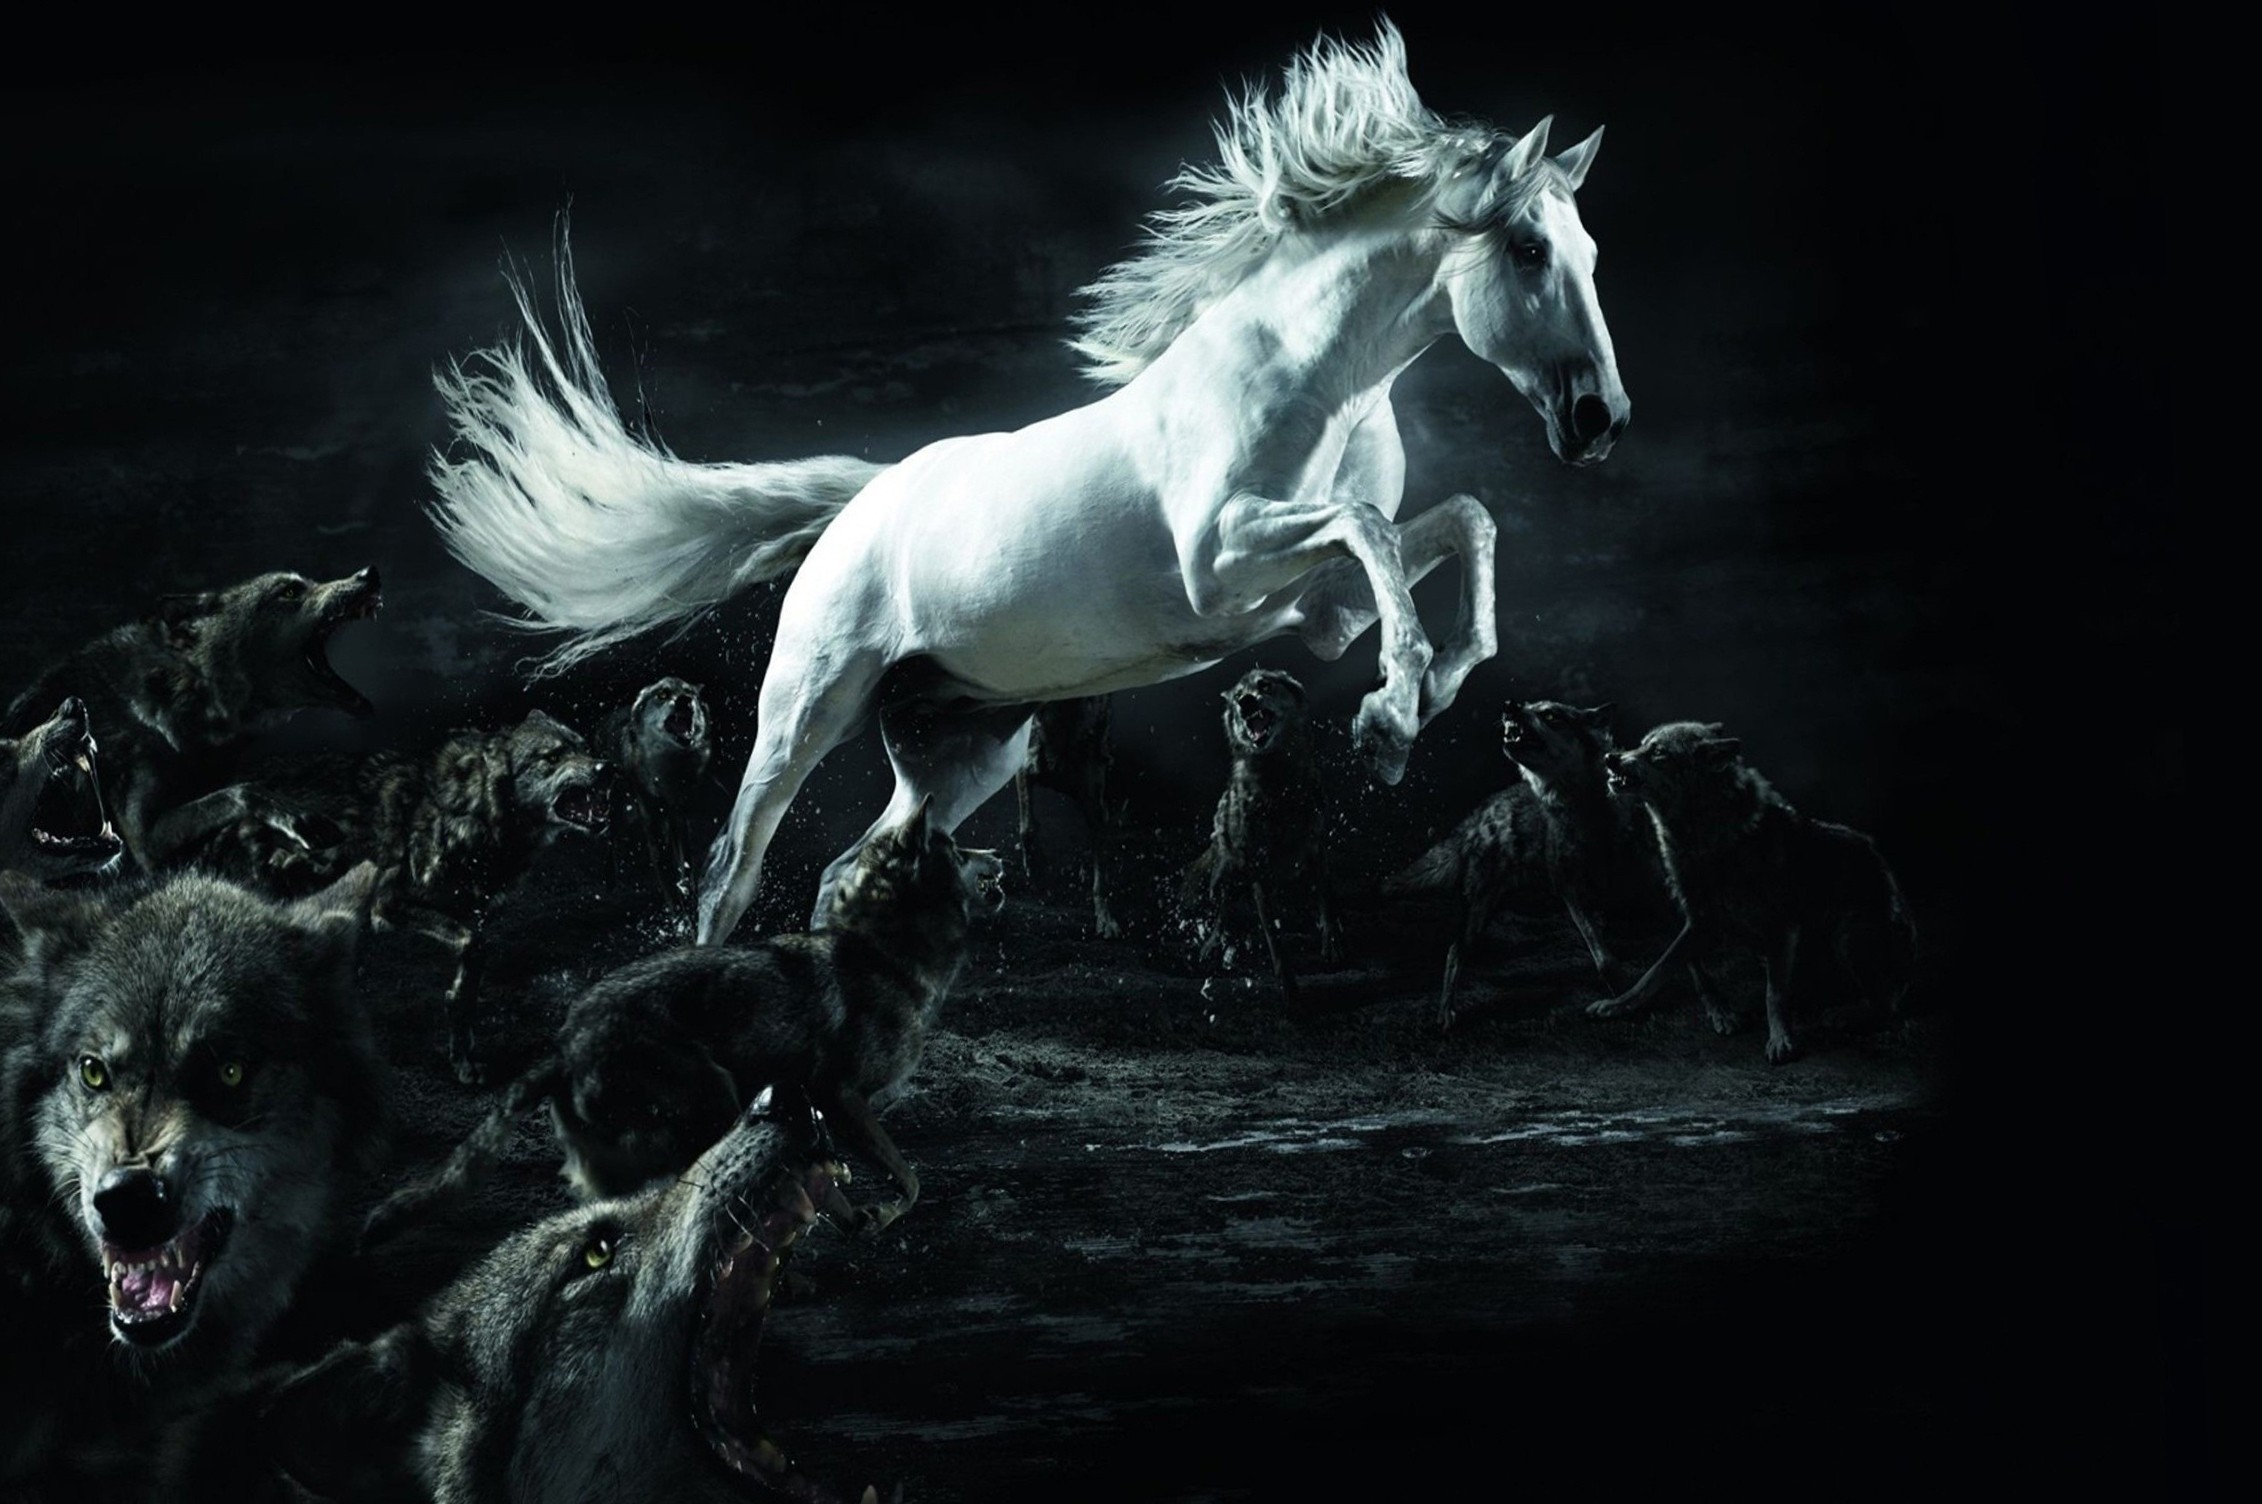 smart wallpaper hd,cavallo,buio,bianco e nero,stallone,personaggio fittizio